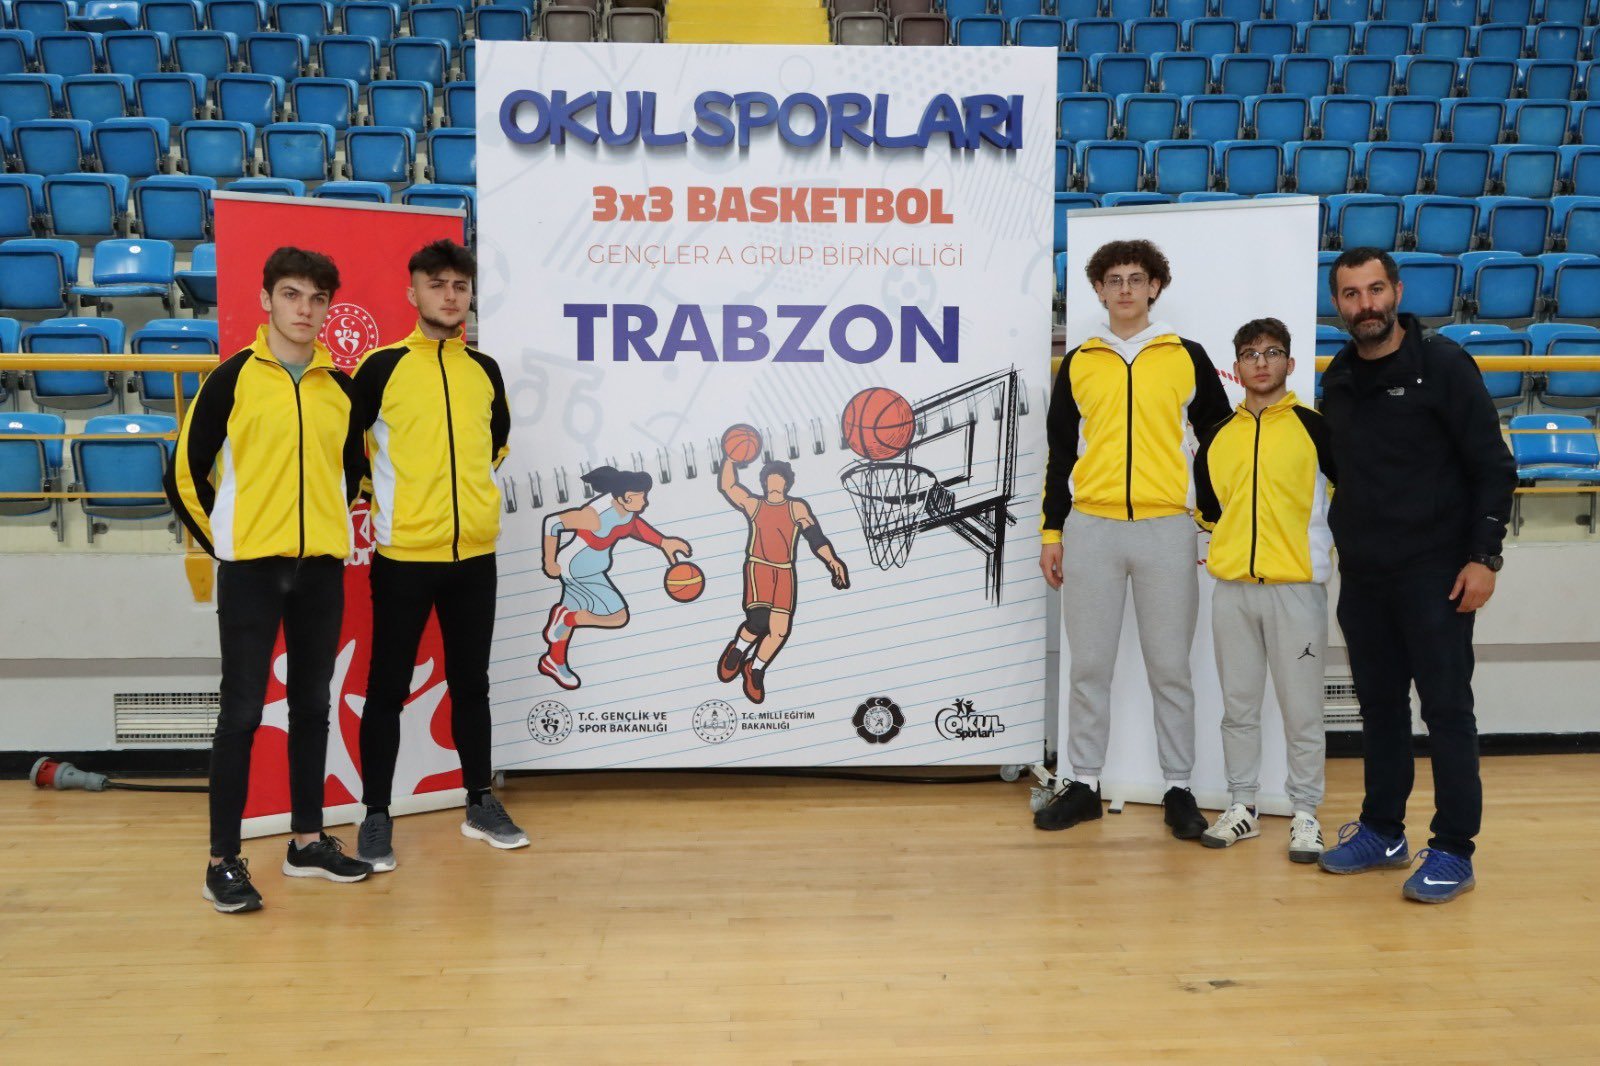 Trabzon’da Okul Sporları 3×3 Basketbol Gençler müsabakaları tamamlandı